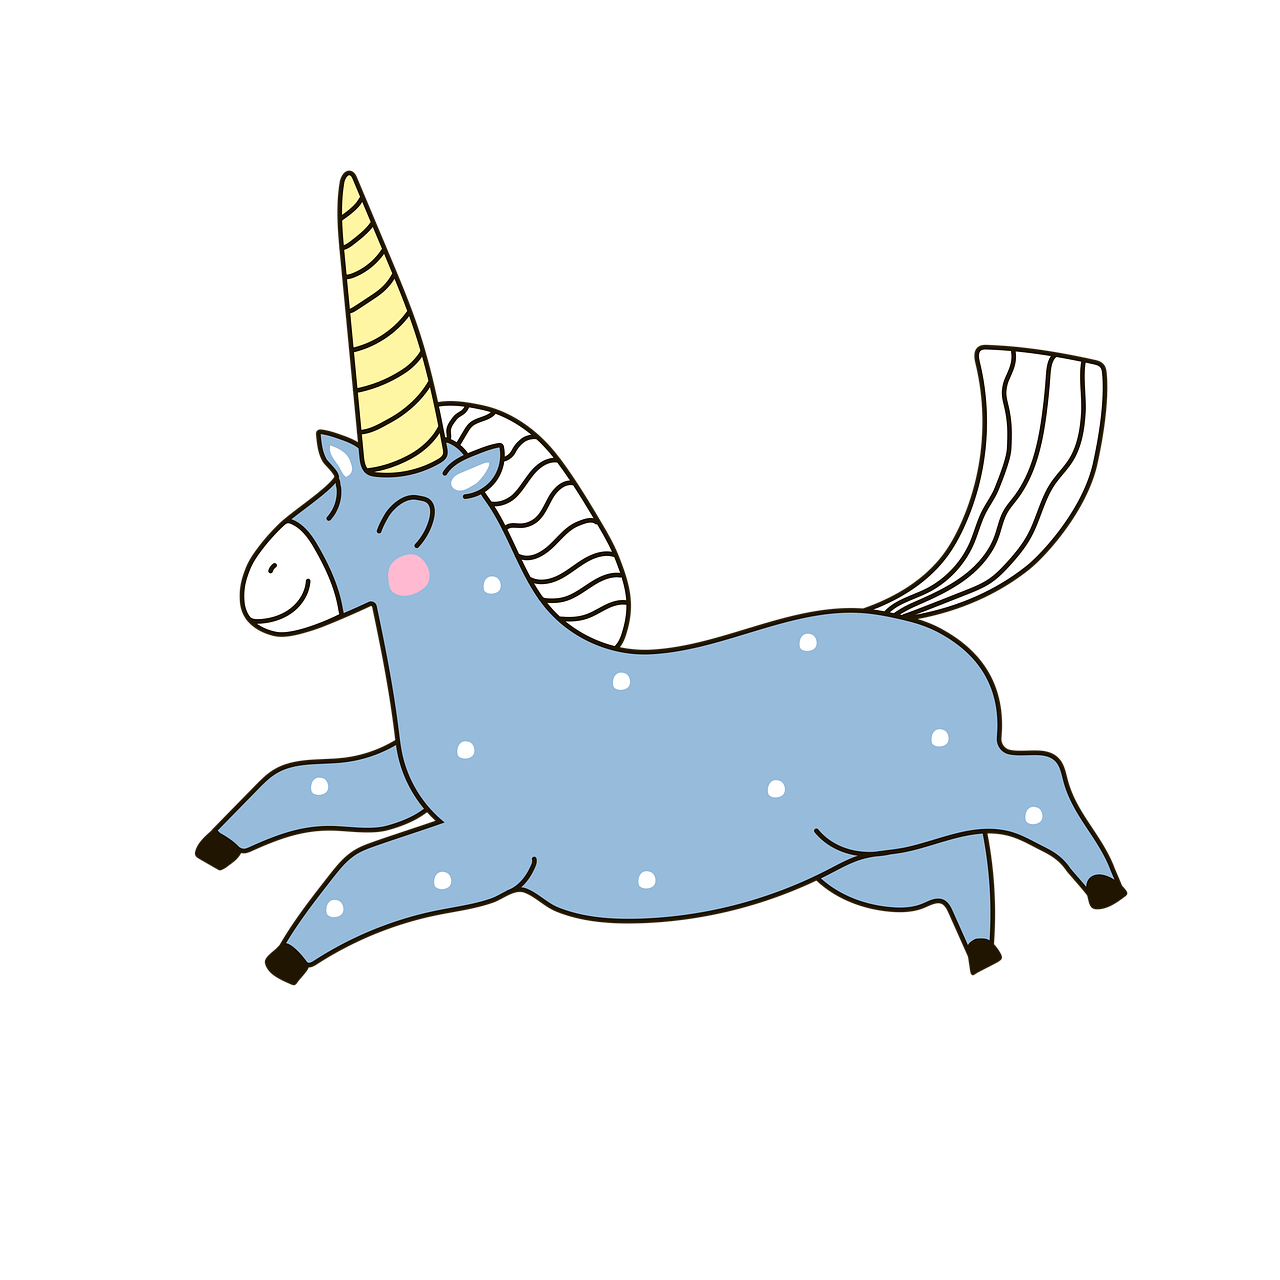 ¿Qué significado unicornios?